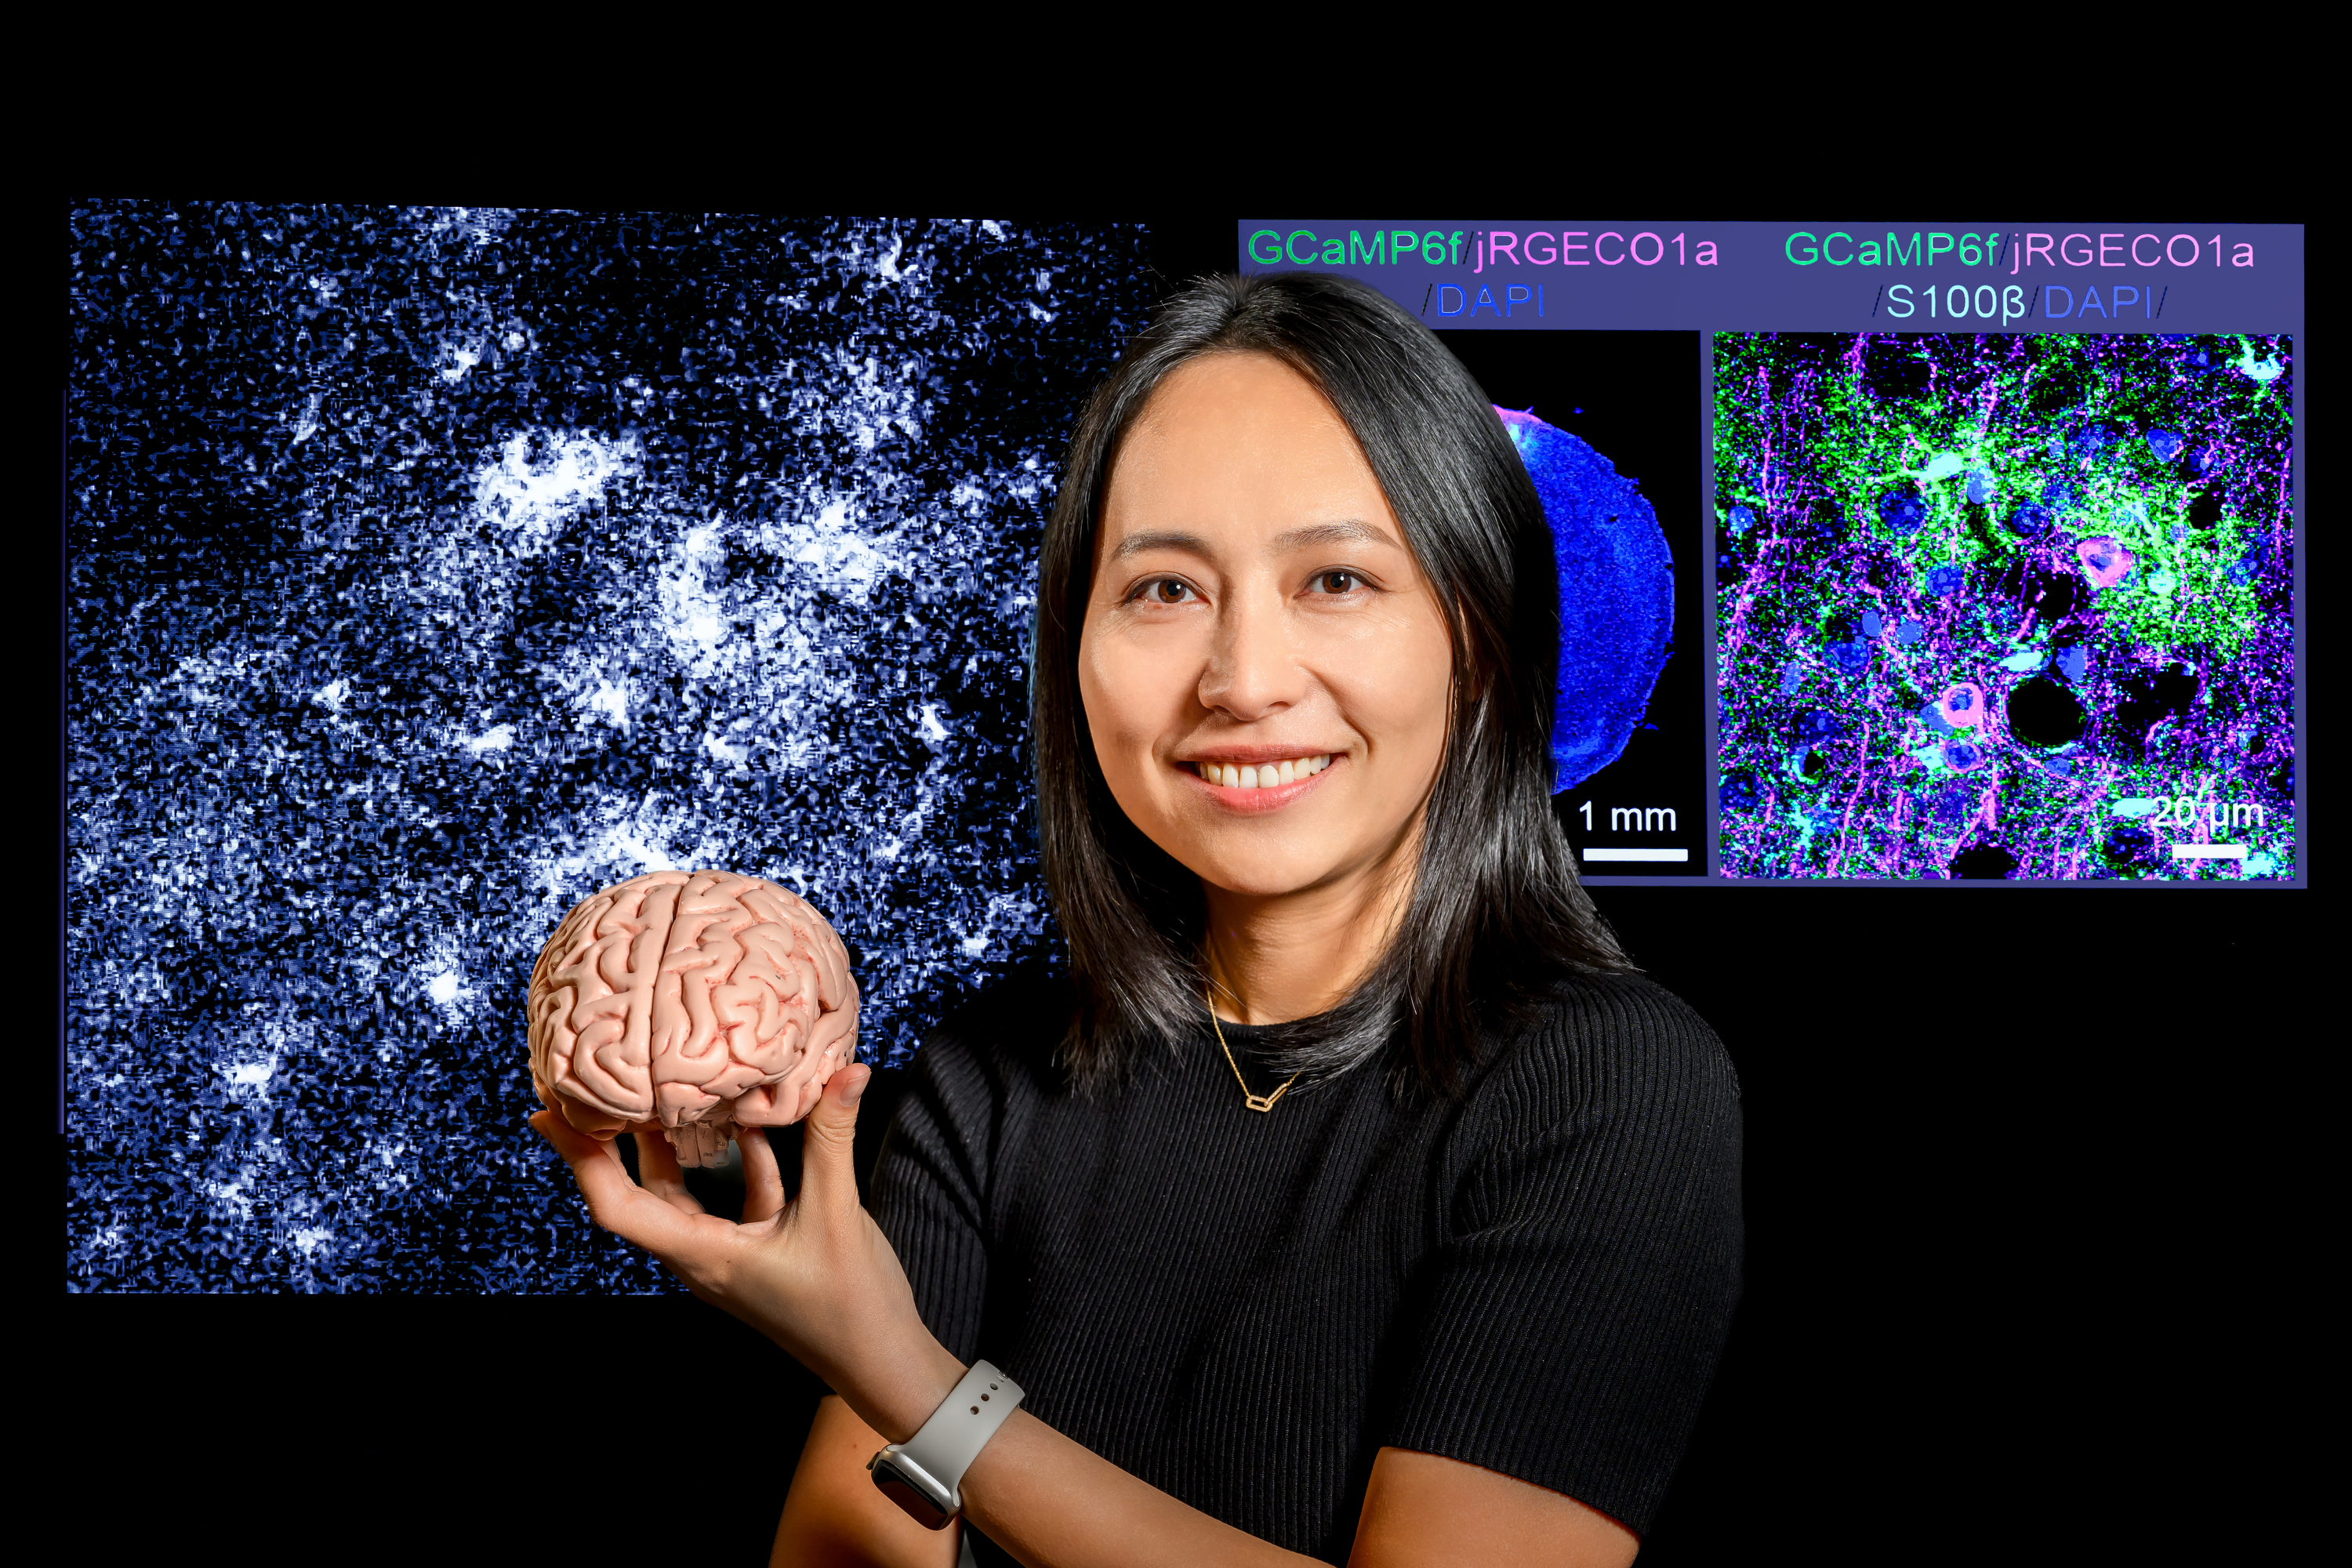 Xinzhu Yu holds a model of a brain